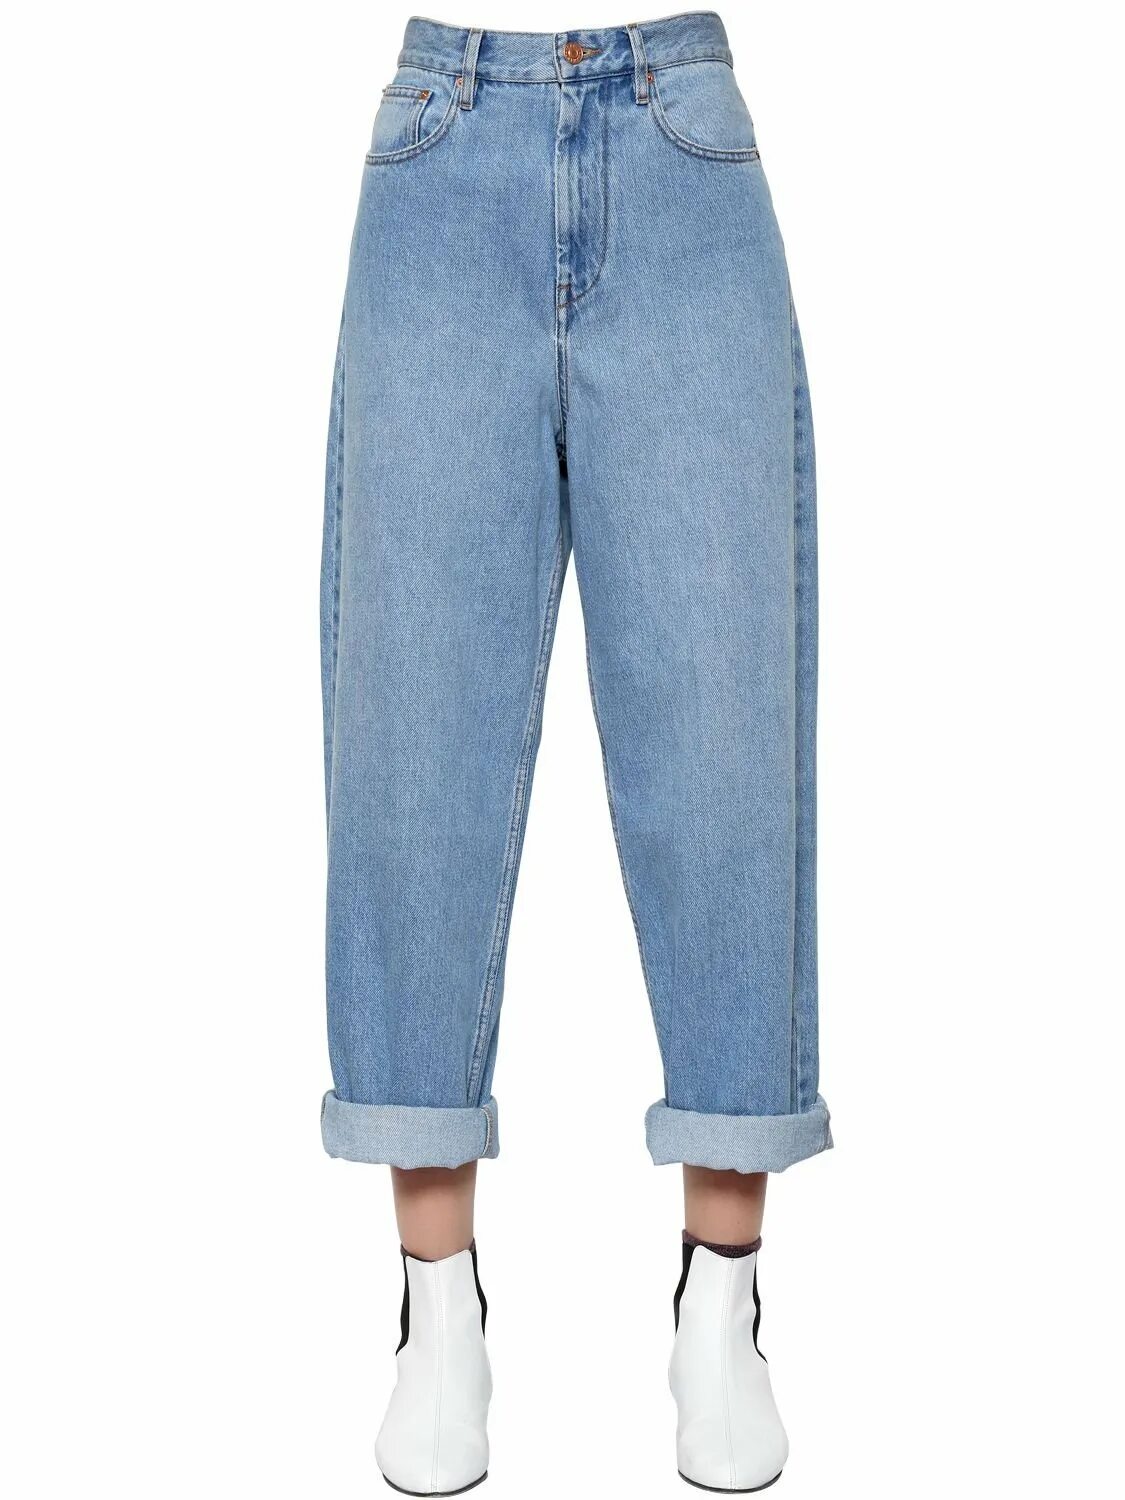 Широкие голубые джинсы женские. Oversized Fit джинсы. Широкие джинсы с подворотами. Широкие джинсы женские с подворотом.